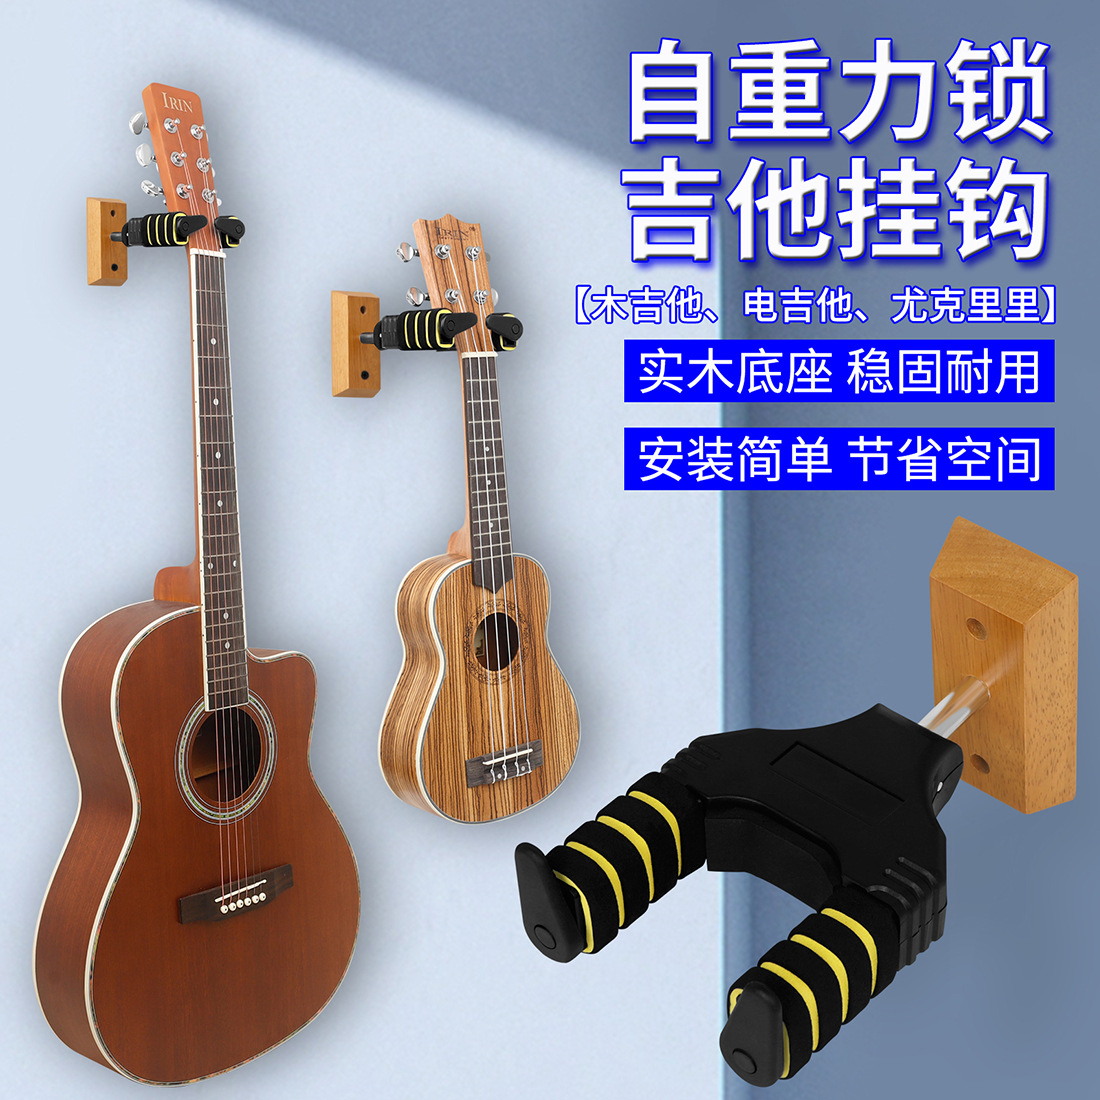 吉他短挂钩实木底座重力自动锁墙壁琴挂架尤克里里电木吉他展示架图